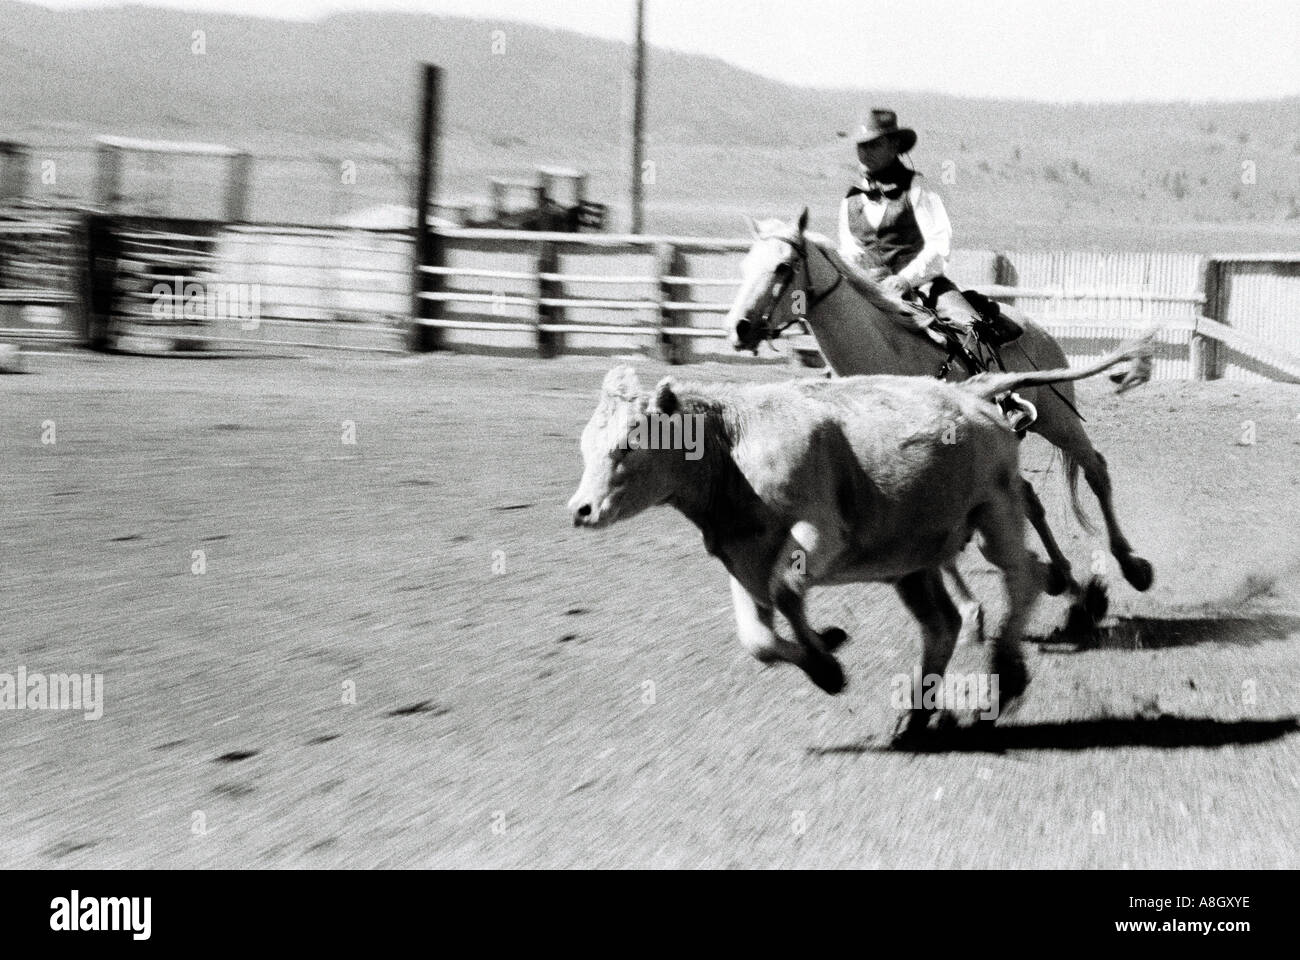 Ein Cowboy auf dem Rücken der Pferde Ranch Aufgaben schneiden Kühe für medizinische Verfahren auf einer Ranch in Oregon Stockfoto